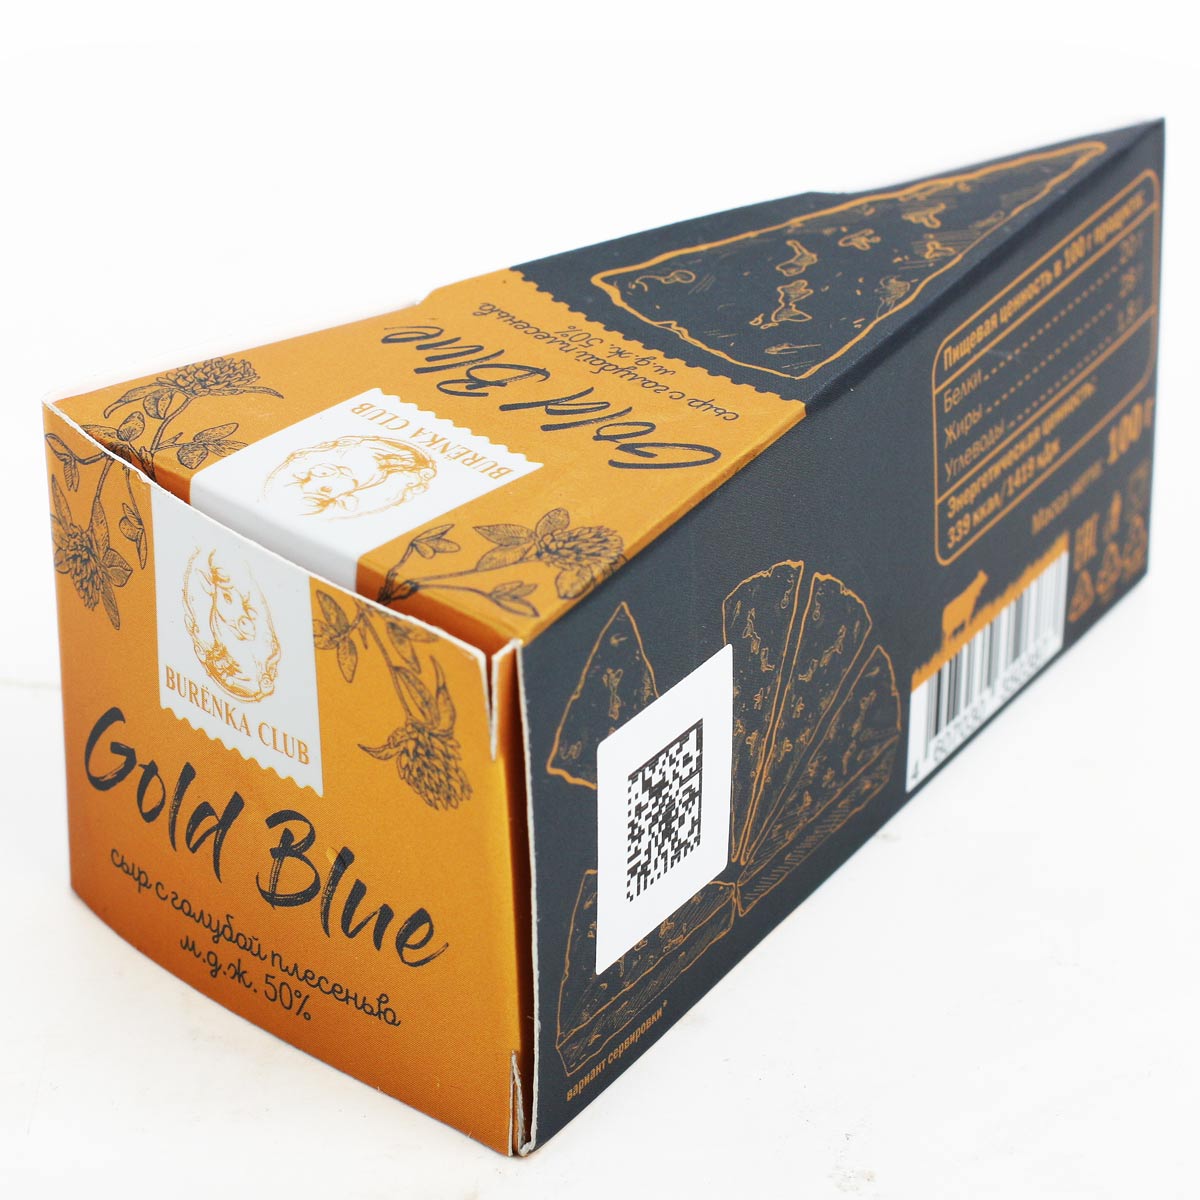 Сыр Burenka Club Gold Blue с голубой плесенью 50% 100 г